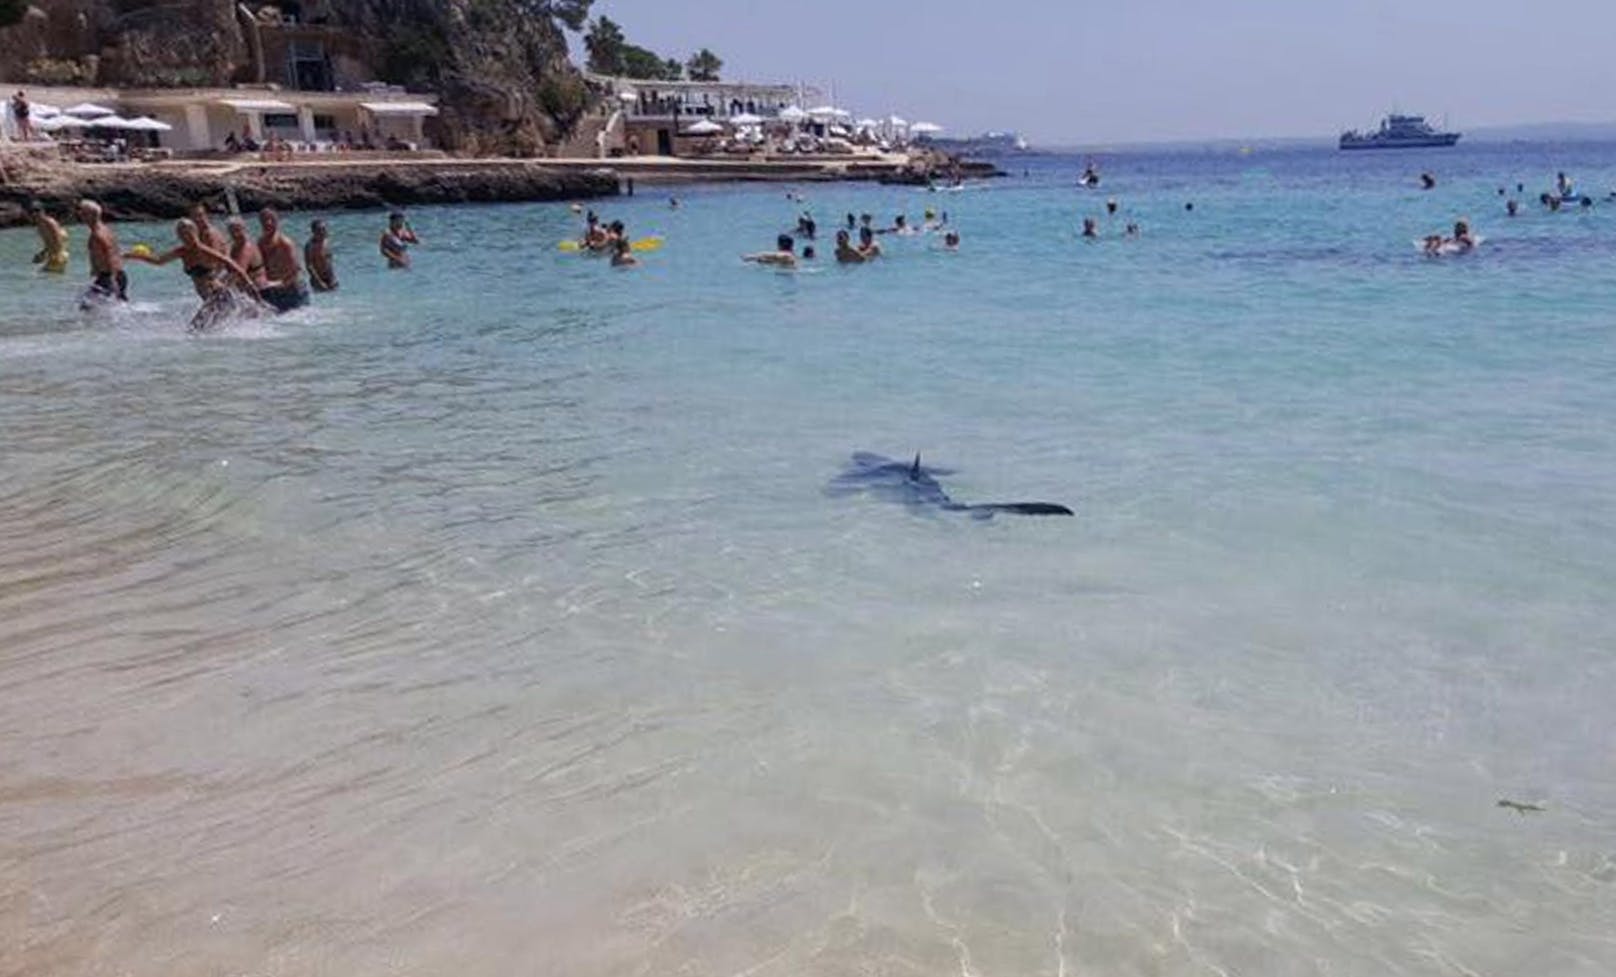 Auf Mallorca kommt es immer wieder einmal zu Hai-Sichtungen. Blauhaie in Küstennähe sind jedoch selten. Zuletzt kam es im&nbsp;Juni 2017 zu einer Begegnung mit einem Blauhai vor der Südwestküste von Mallorca.